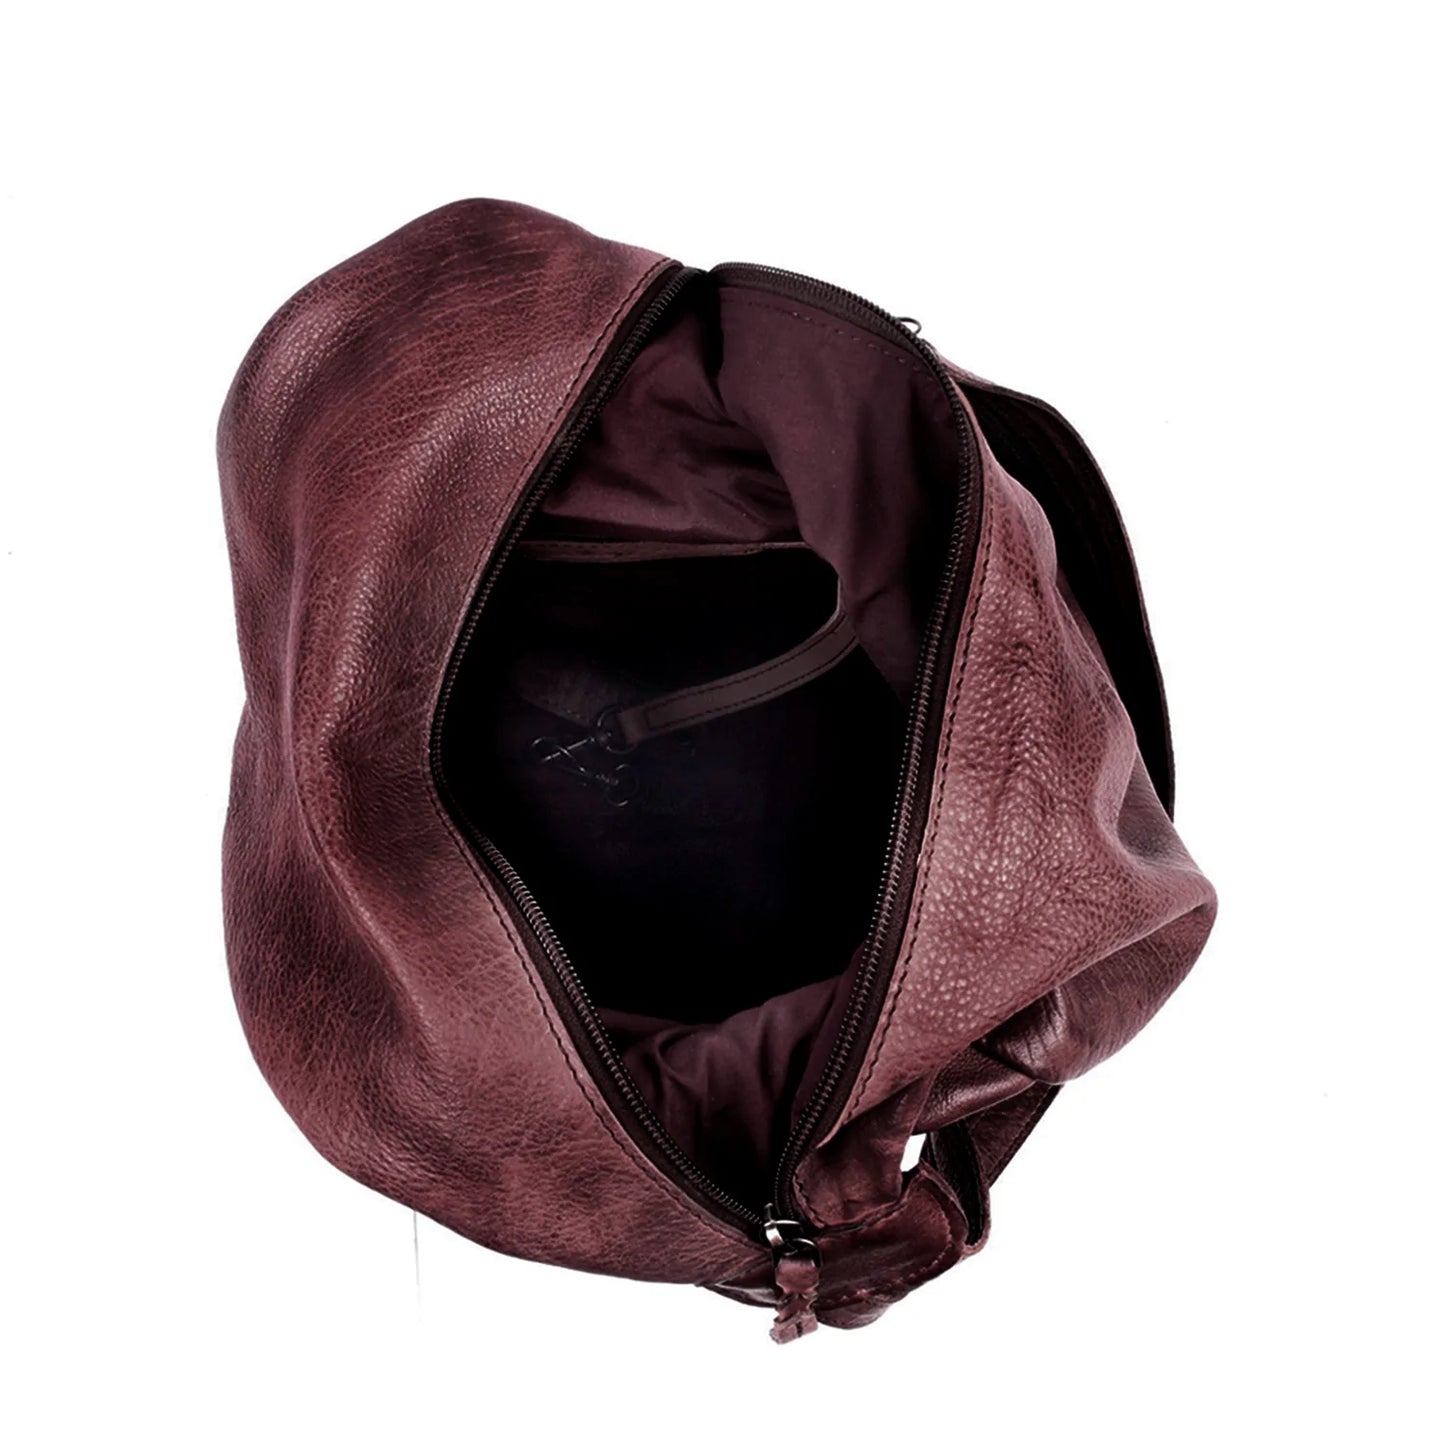 Marley Unisex Concealed Carry Leather Sling Backpack - Hiding Hilda, LLC